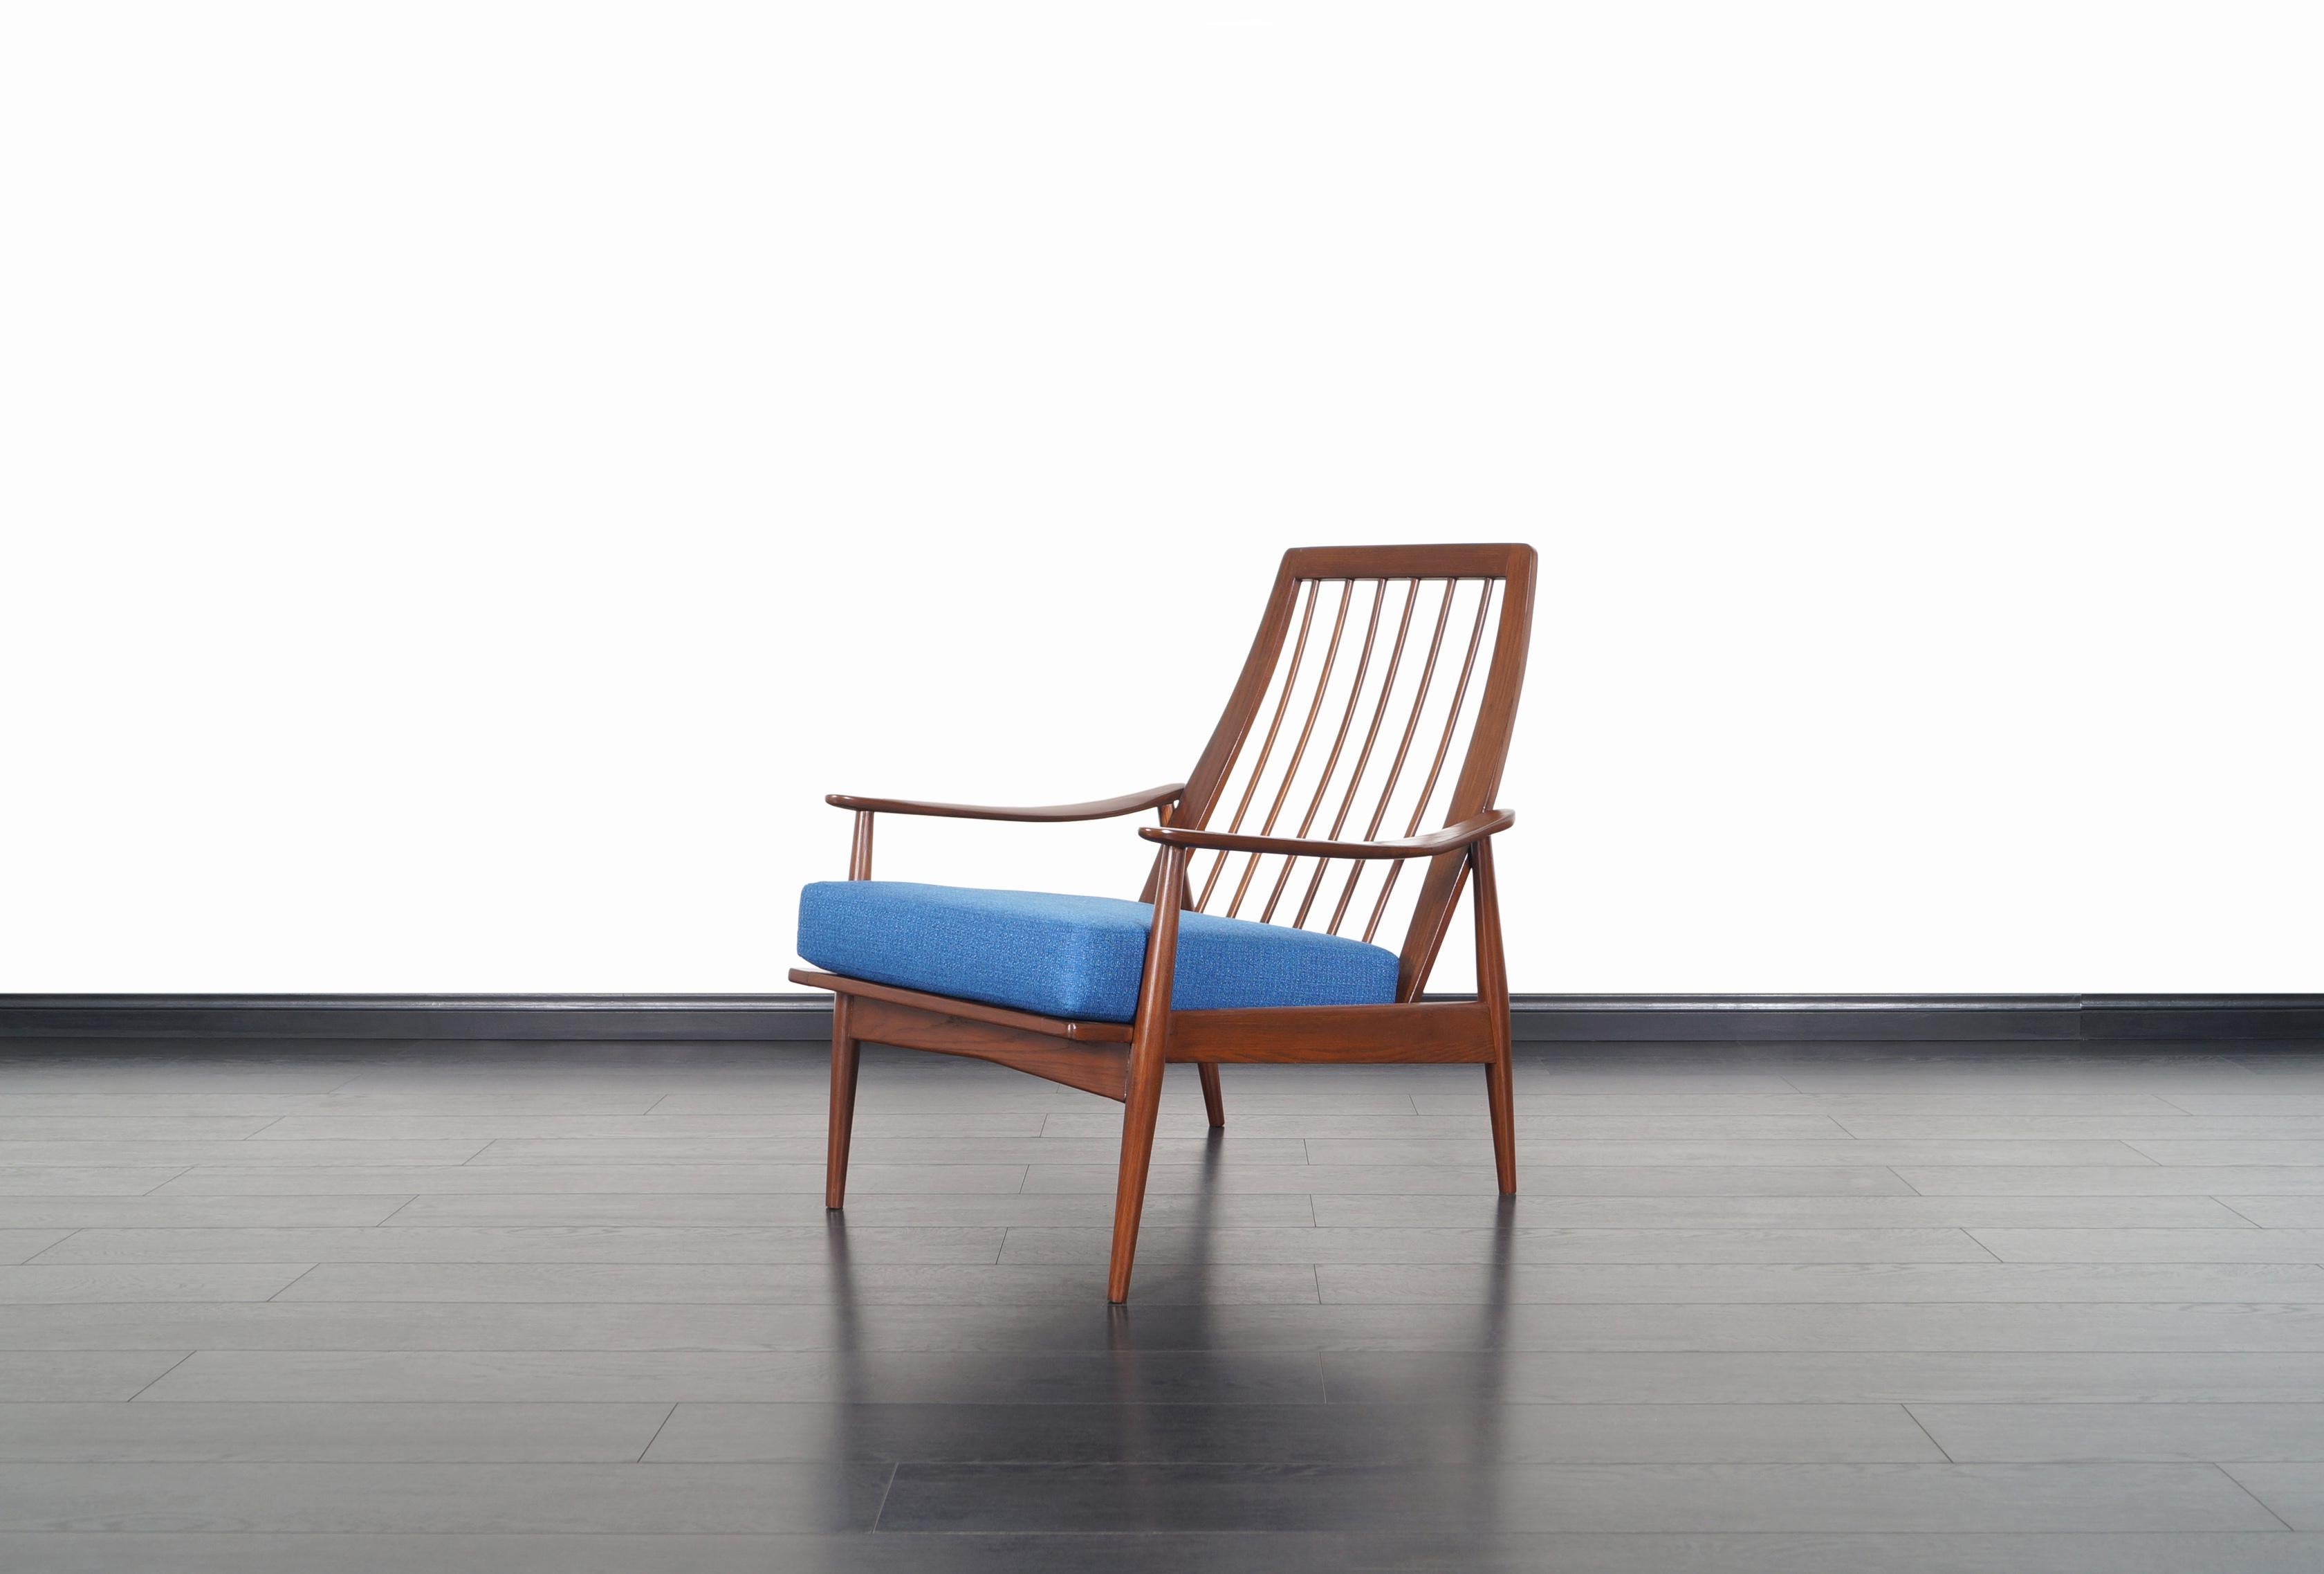 Fabuleux fauteuil de salon moderne du milieu du siècle, fabriqué aux États-Unis, vers les années 1950. Cette chaise présente une structure en chêne massif teinté noyer avec des accoudoirs sculpturaux et un dossier à lattes. Les proportions